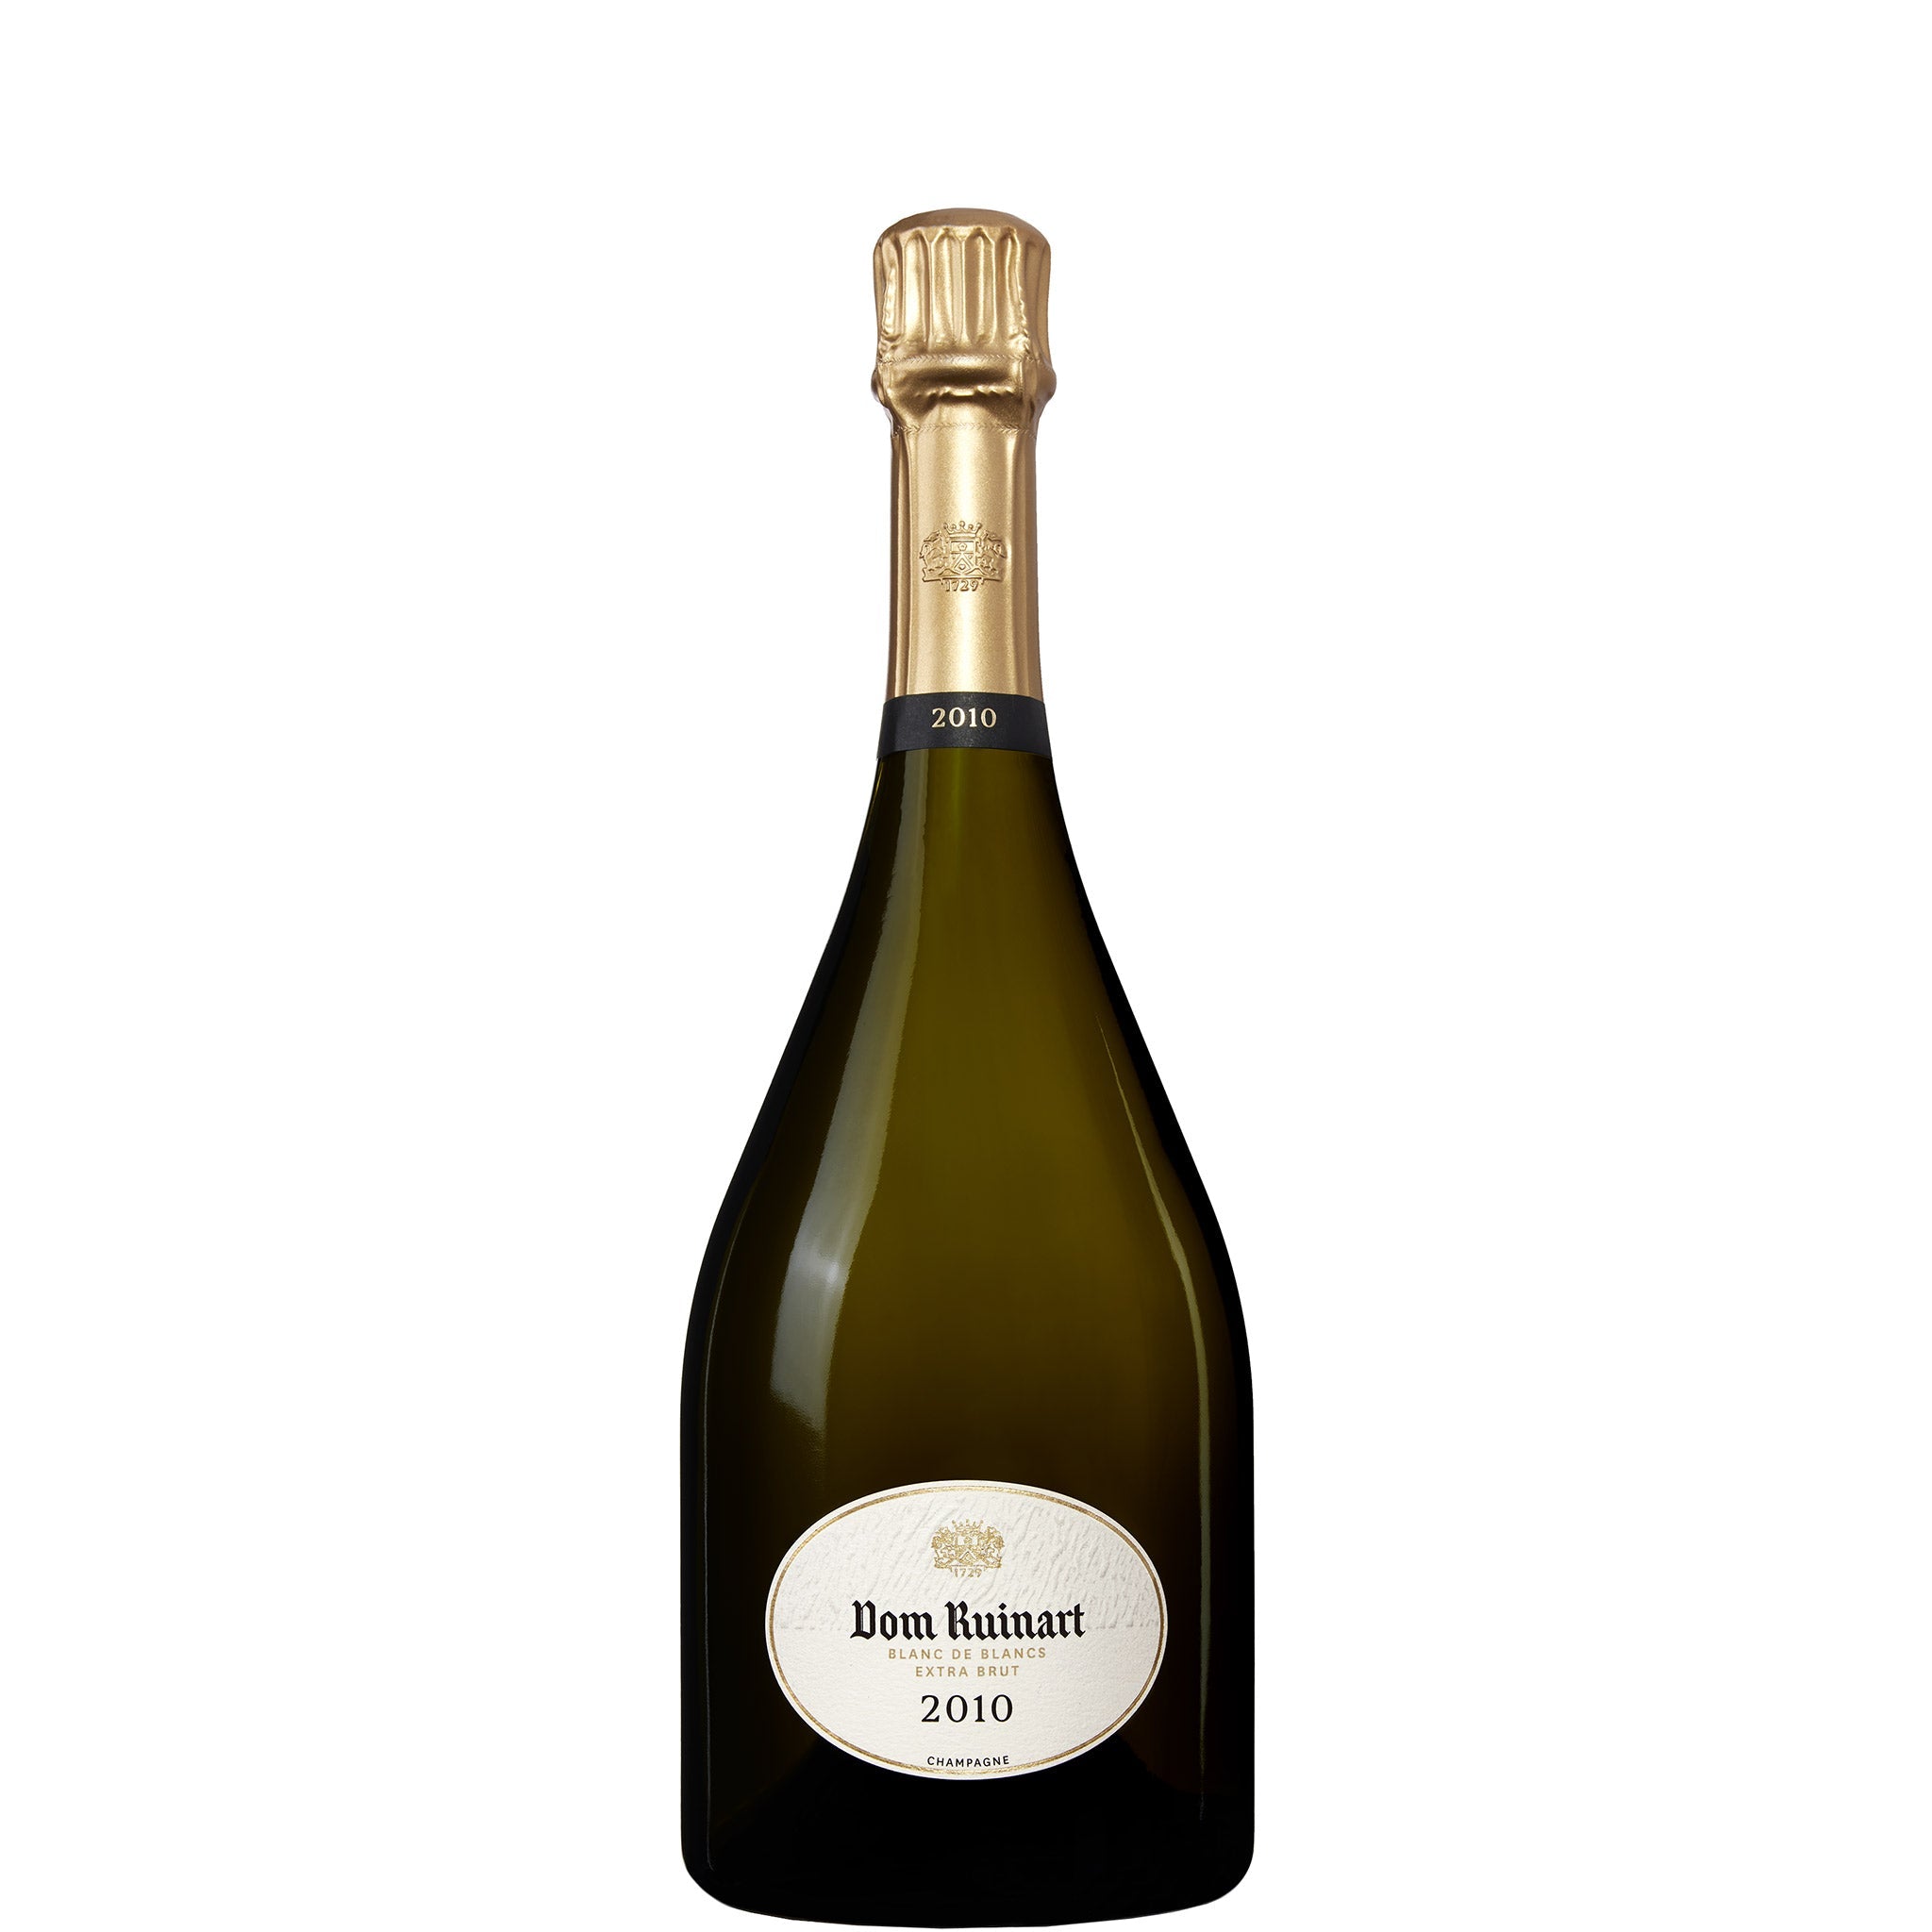 BUY] Champagne Ruinart  Blanc de Blancs Brut (Half Bottle) - NV at